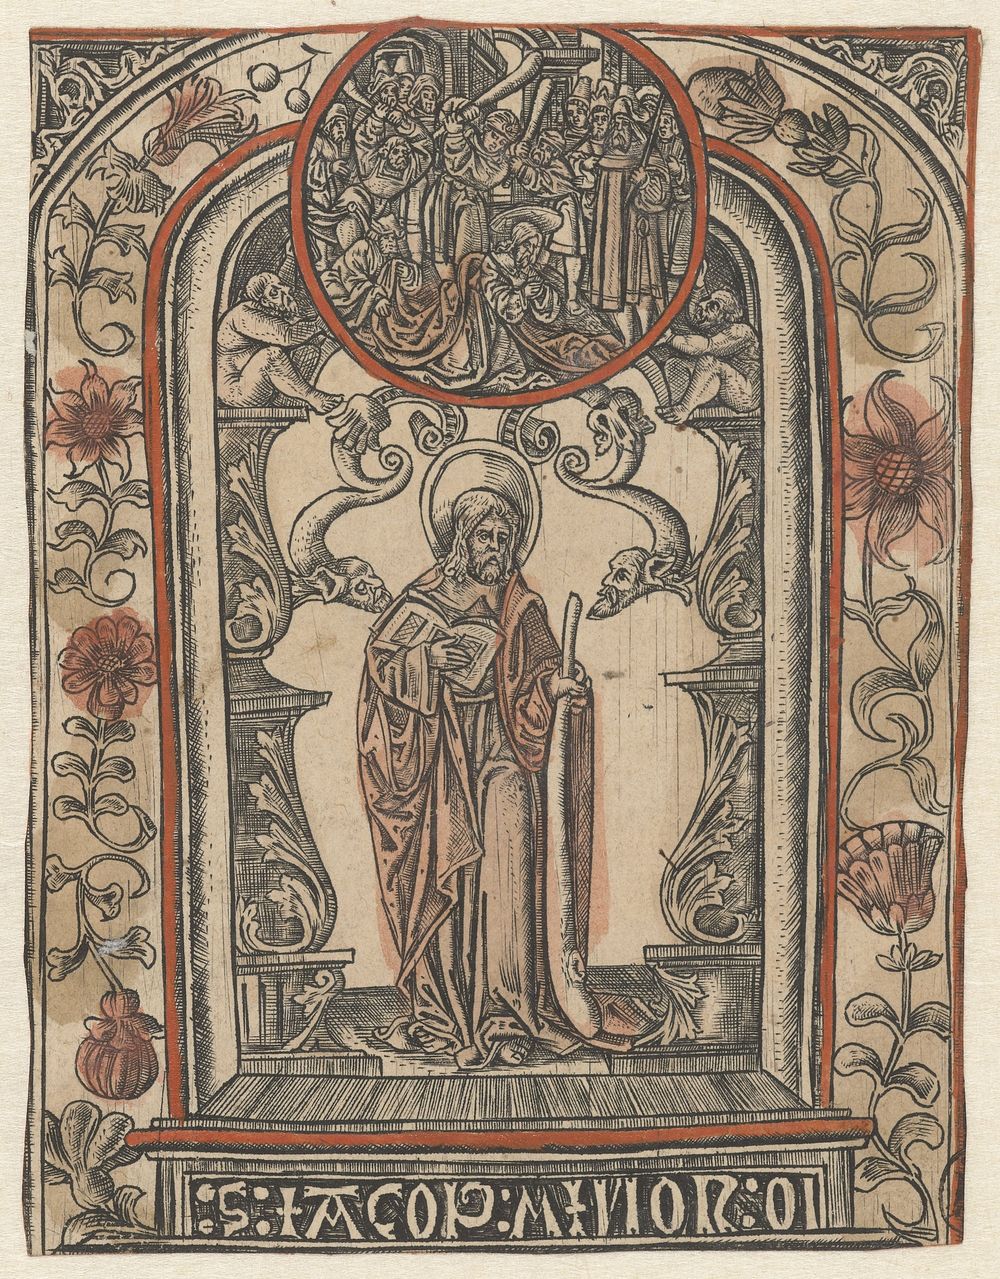 De apostel Jakobus Minor en zijn martelaarschap (1510 - 1530) by Allaert Claesz and Monogrammist S 16e eeuw